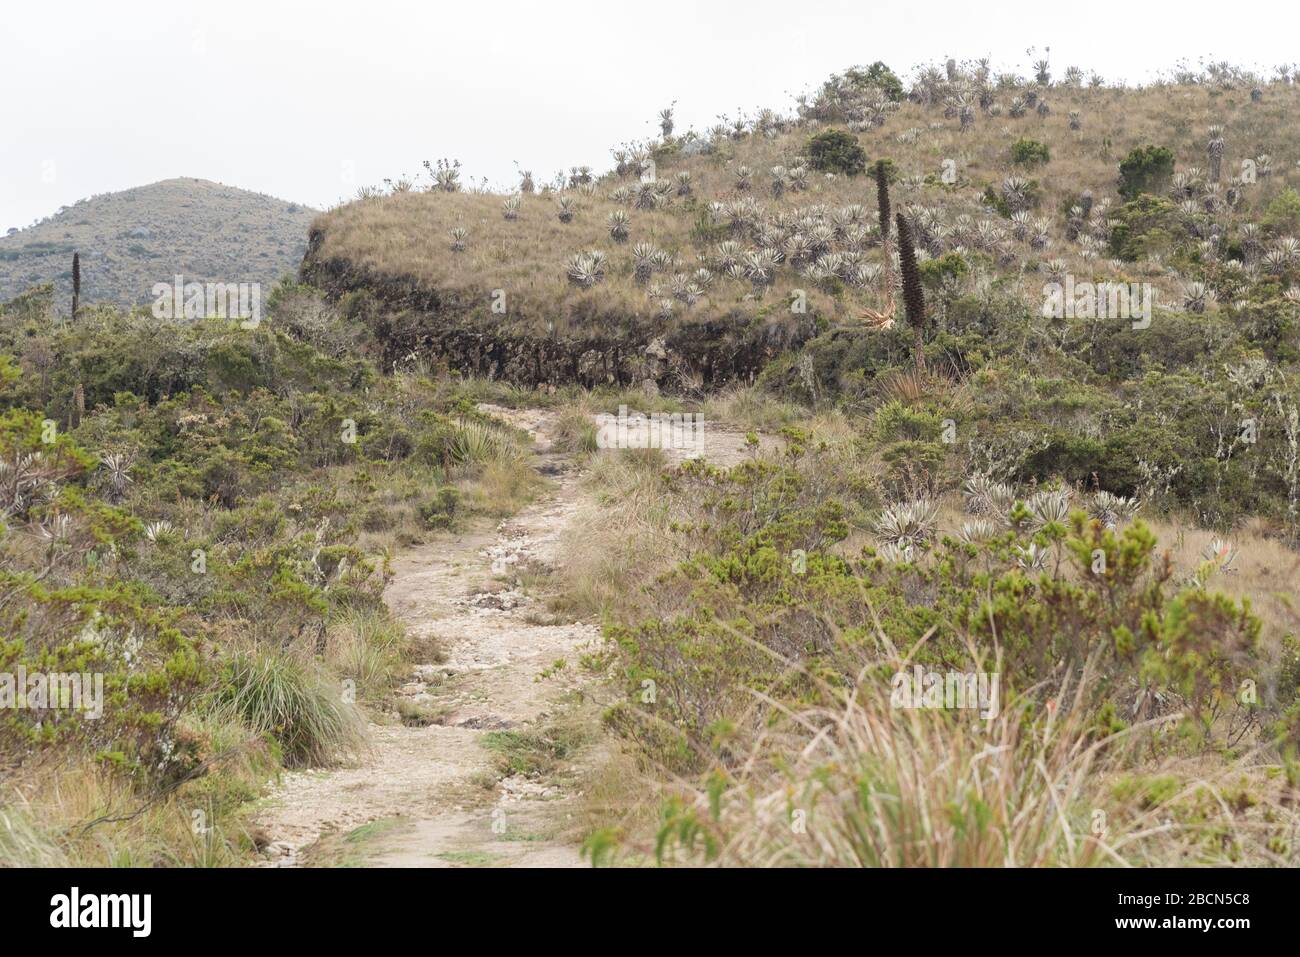 Parco Nazionale di Chingaza, Colombia. Paramo, sentiero attraverso un paesaggio di brughiere, con vegetazione autoctona ai suoi bordi e colline all'orizzonte Foto Stock